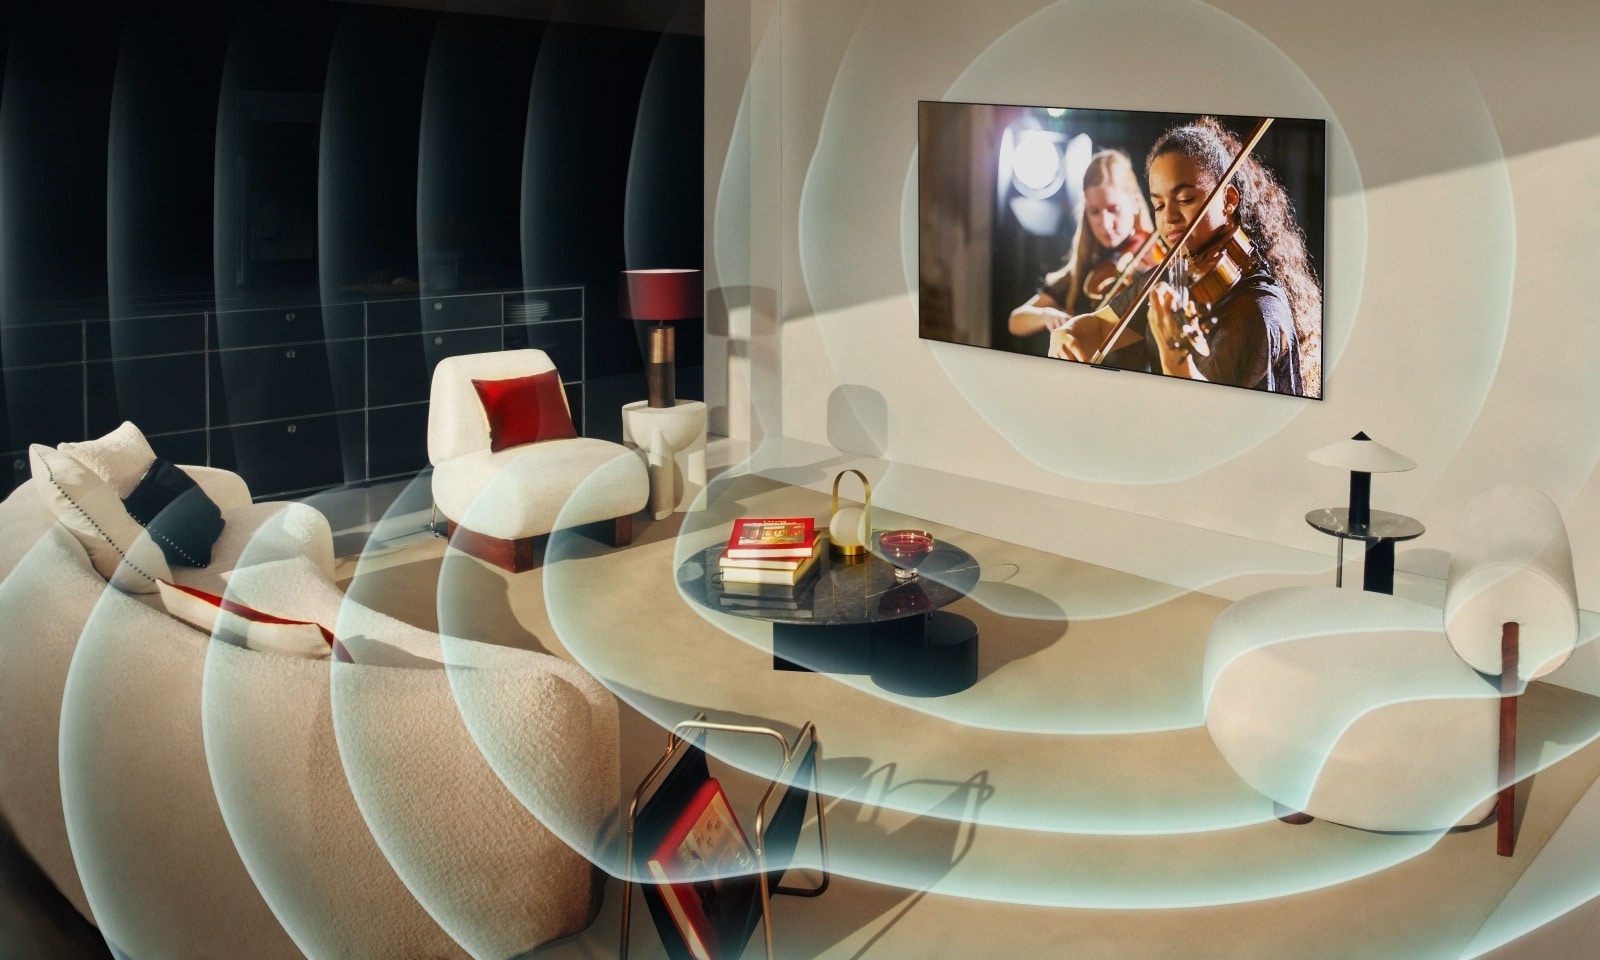 Ein LG OLED TV in einer modernen Stadtwohnung. Ein Gitter überlagert das Bild wie ein Scan des Raums, und dann erscheinen blaue Schallwellen auf dem Bildschirm, die den Raum perfekt mit Klang füllen.